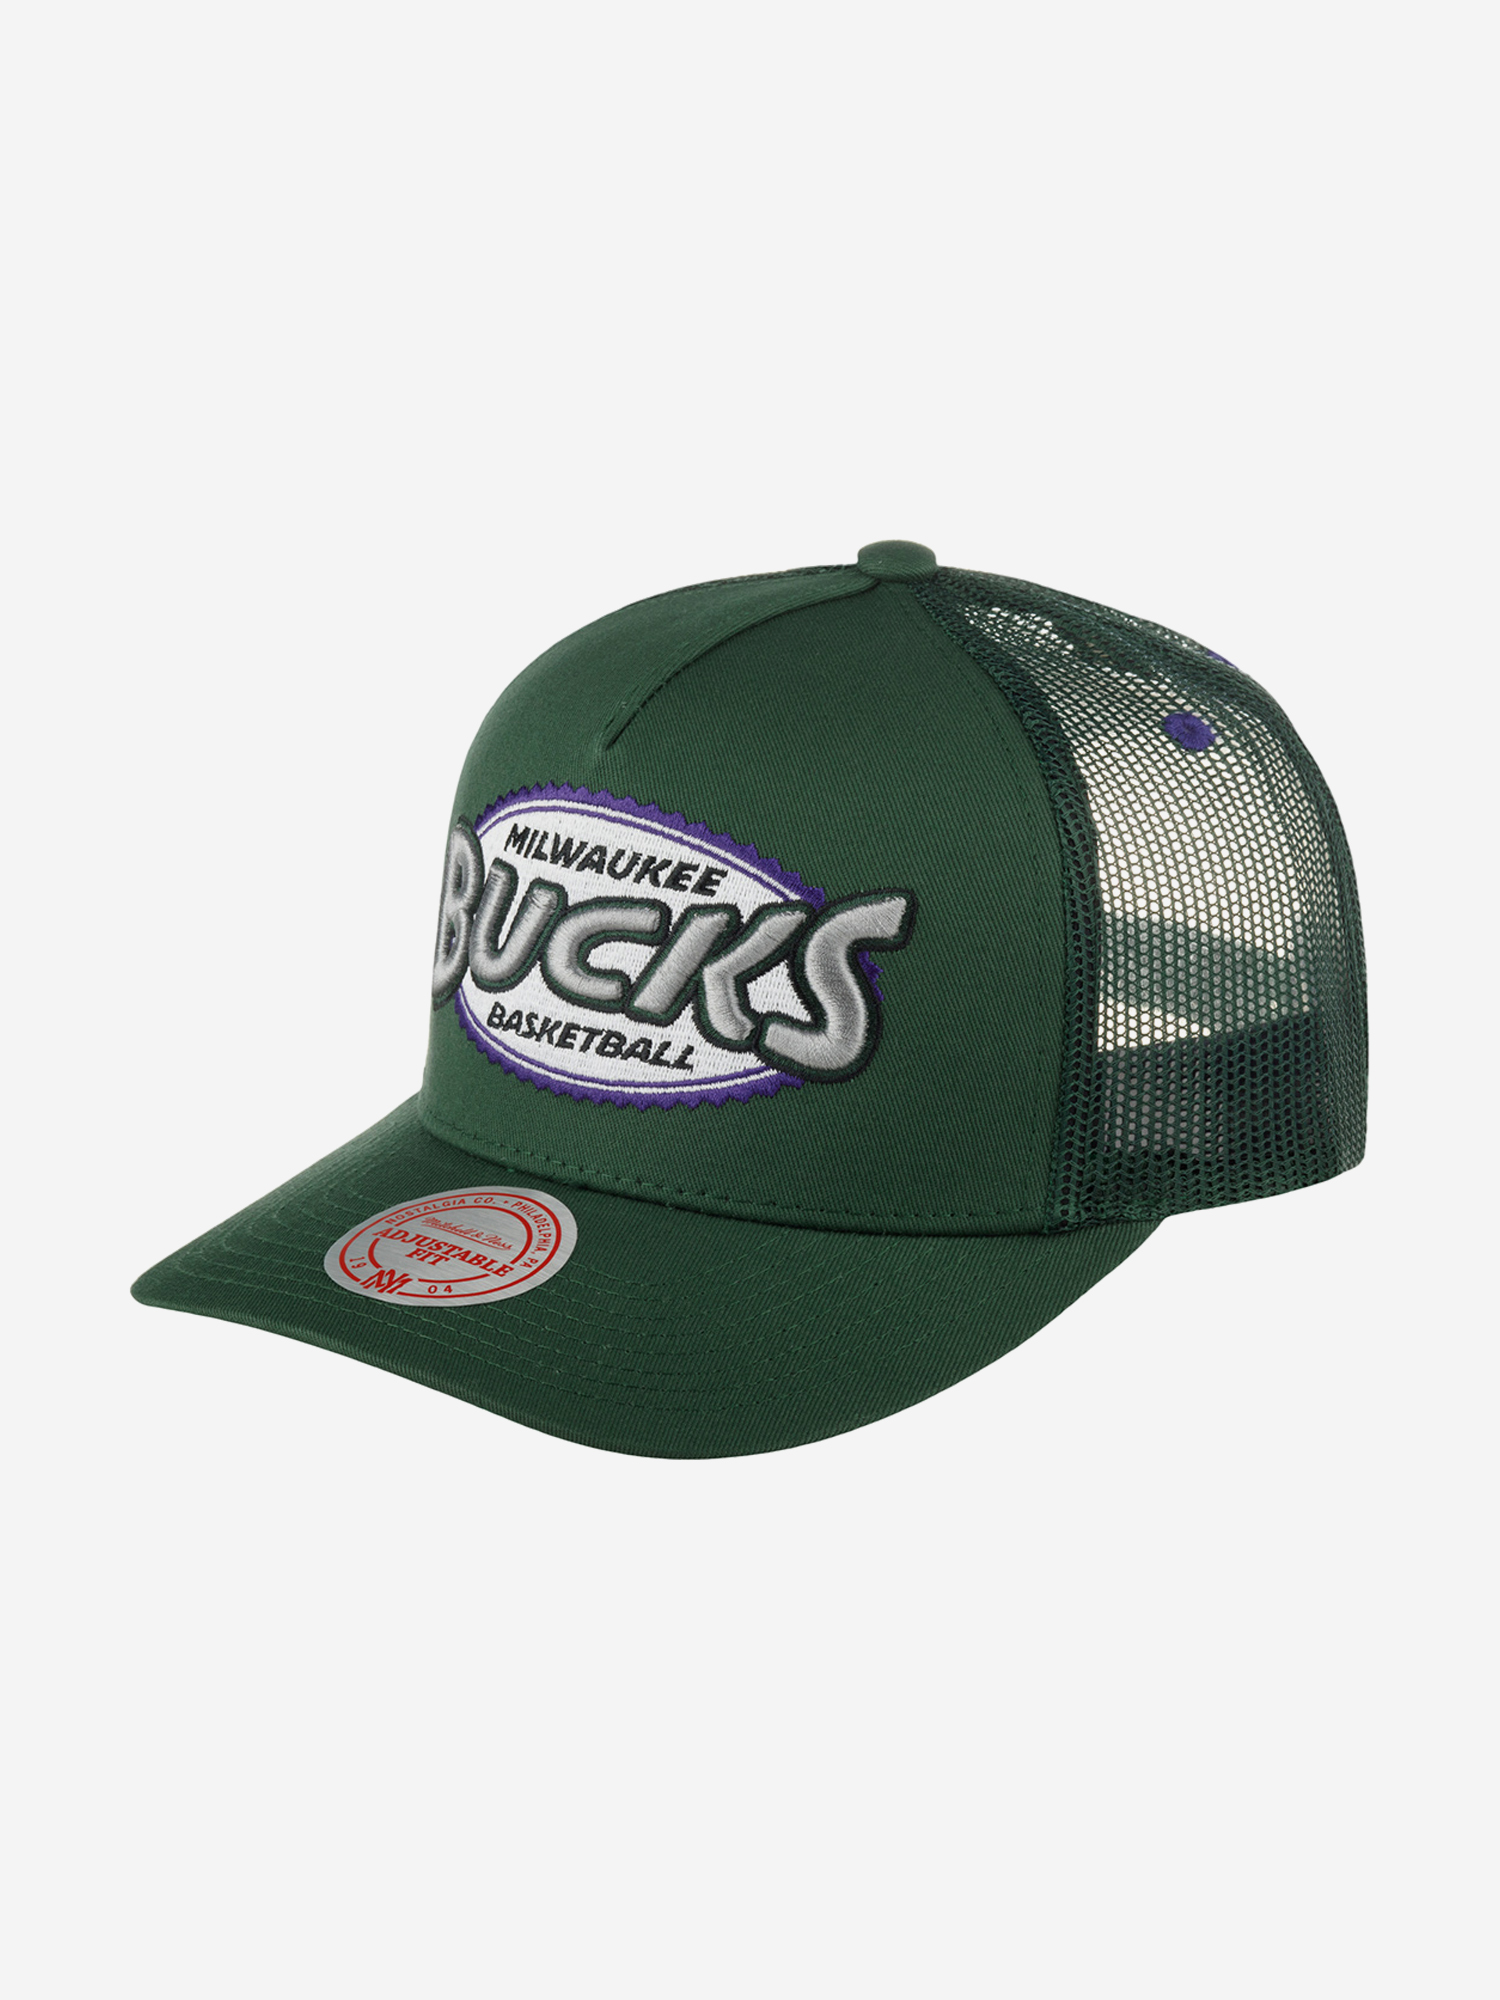 Бейсболка с сеточкой MITCHELL NESS HHSS5461-MBUYYPPPGREN Milwaukee Bucks NBA (зеленый), Зеленый